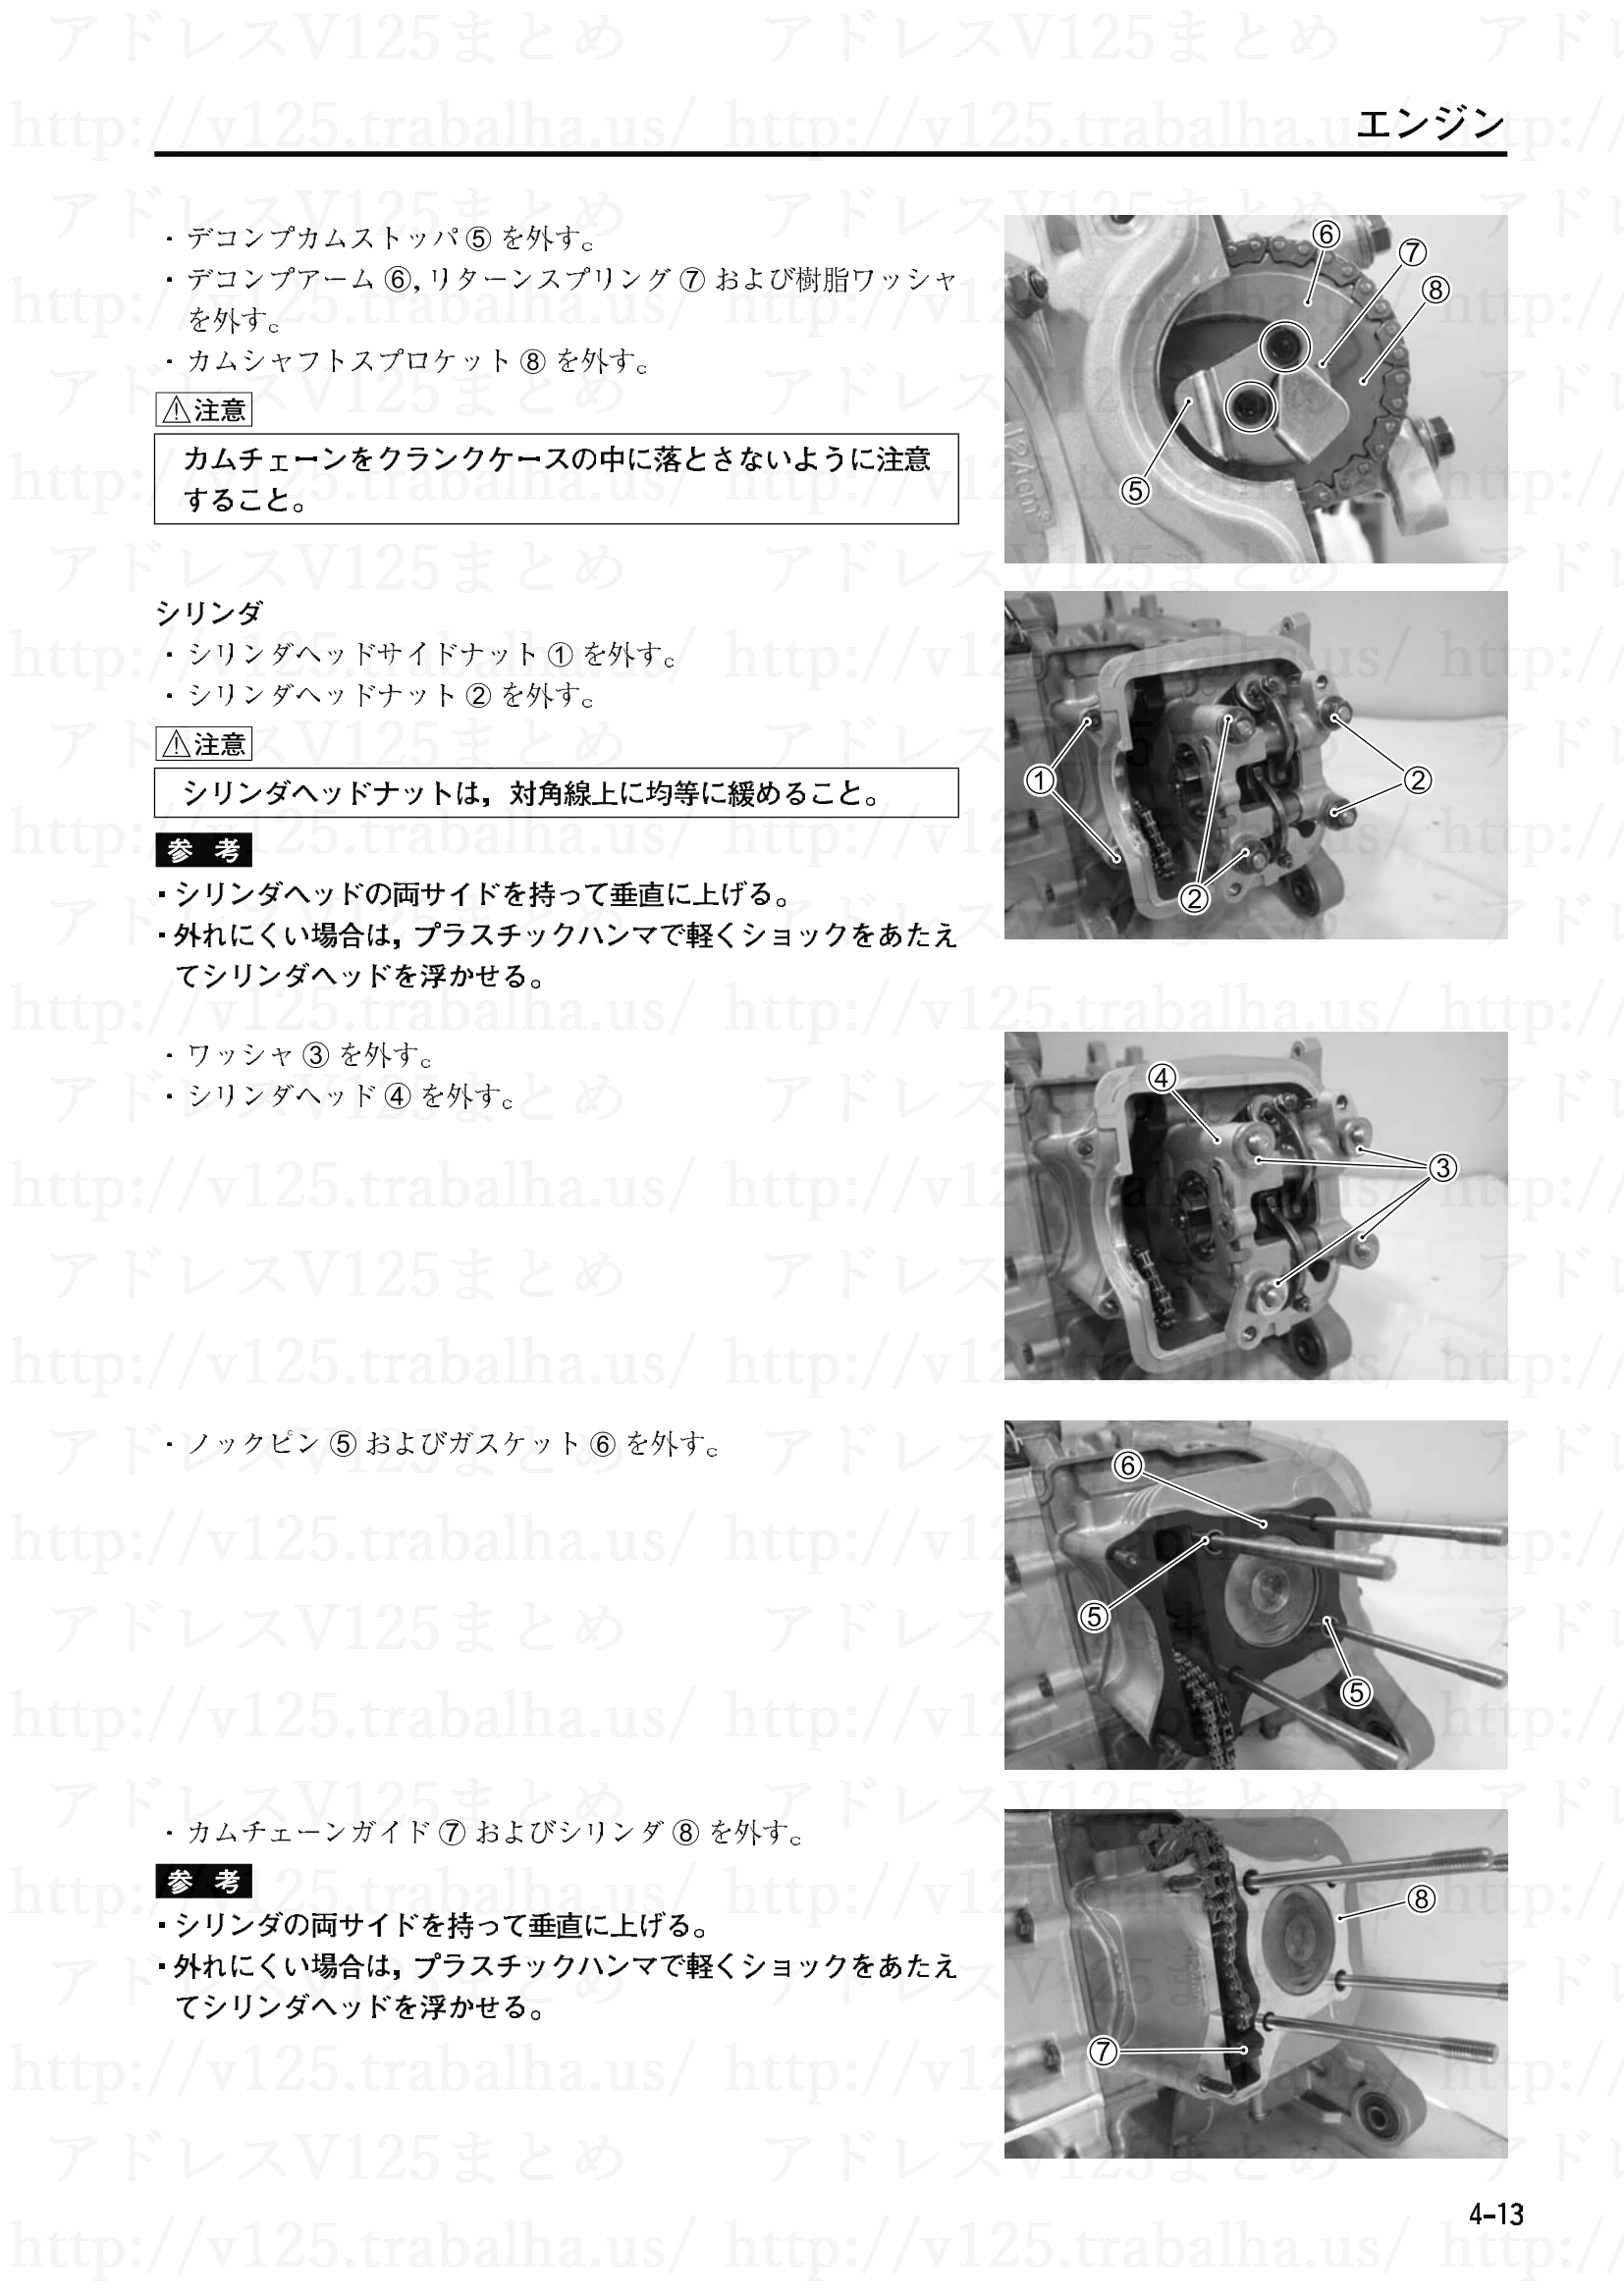 4-13【エンジン】エンジンの分解2